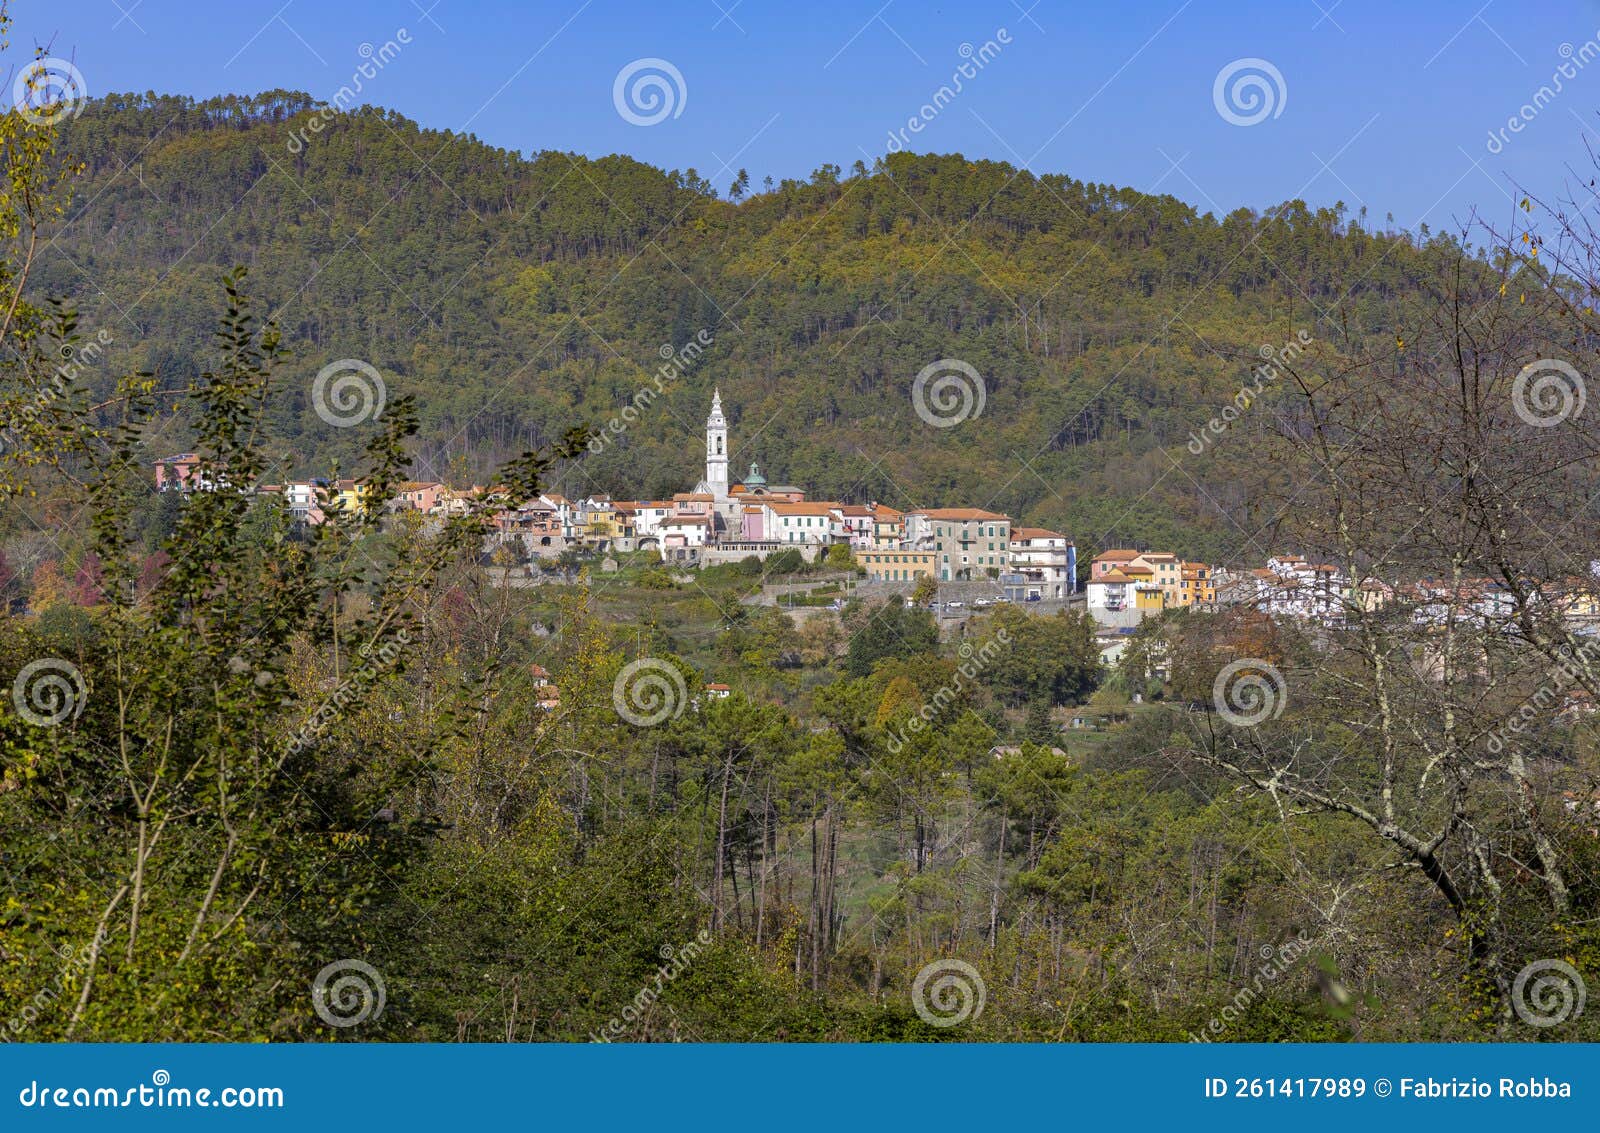 view of the small village of carro, la spezia province, italy